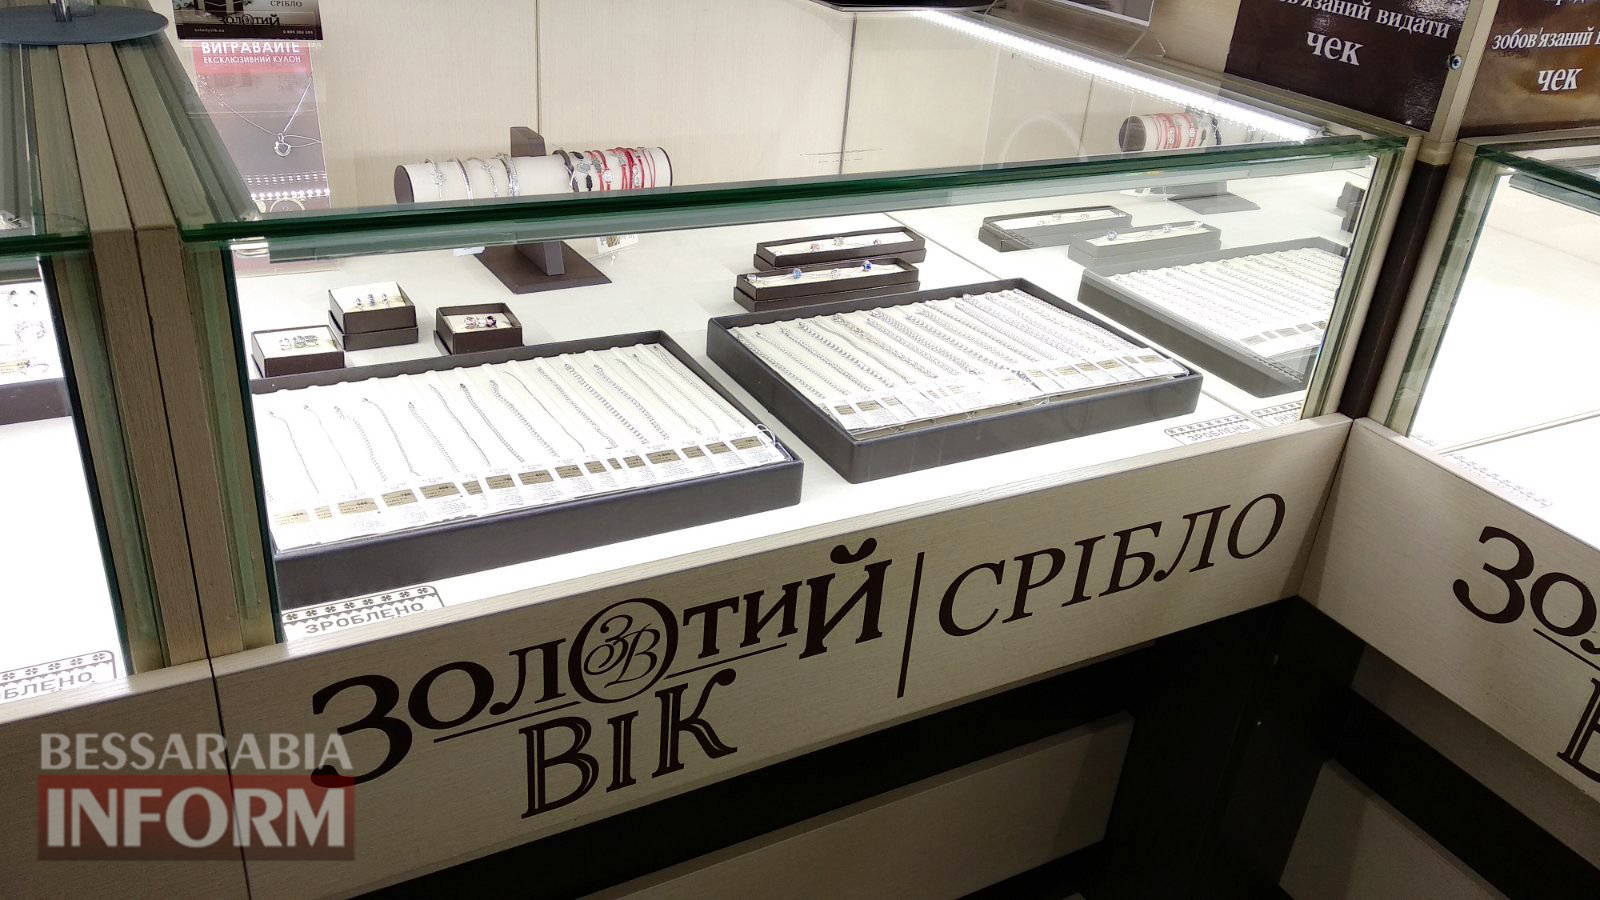 В Килии открылся филиал всеукраинской ювелирной сети "Золотий вік"